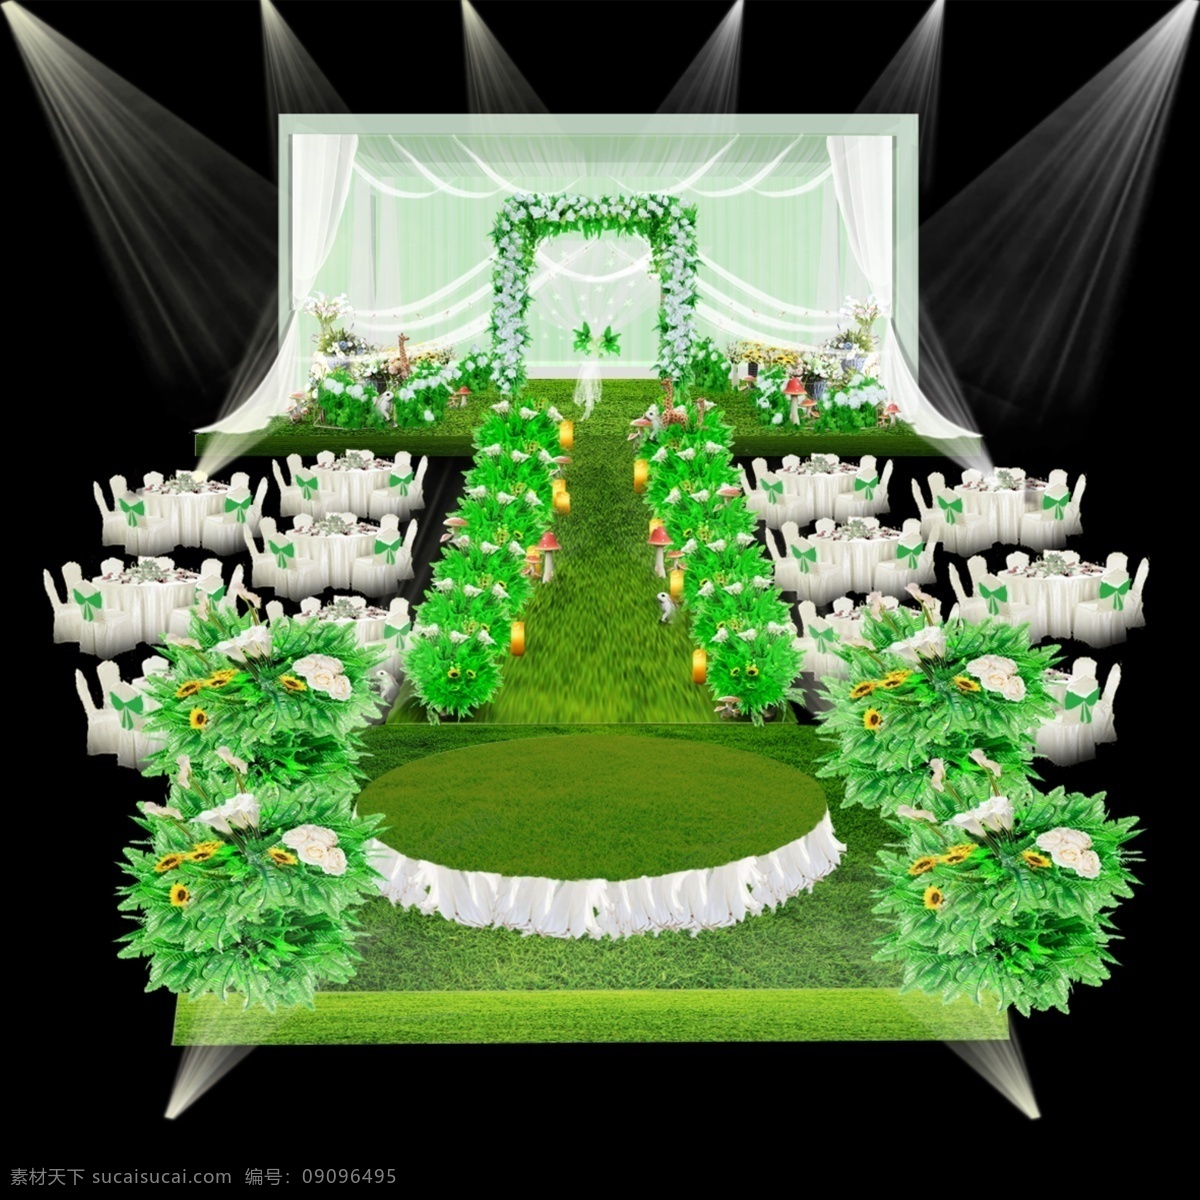 绿色 森 系 婚礼 效果图 场景 白 绿 婚礼背景 婚礼舞台 婚礼舞美设计